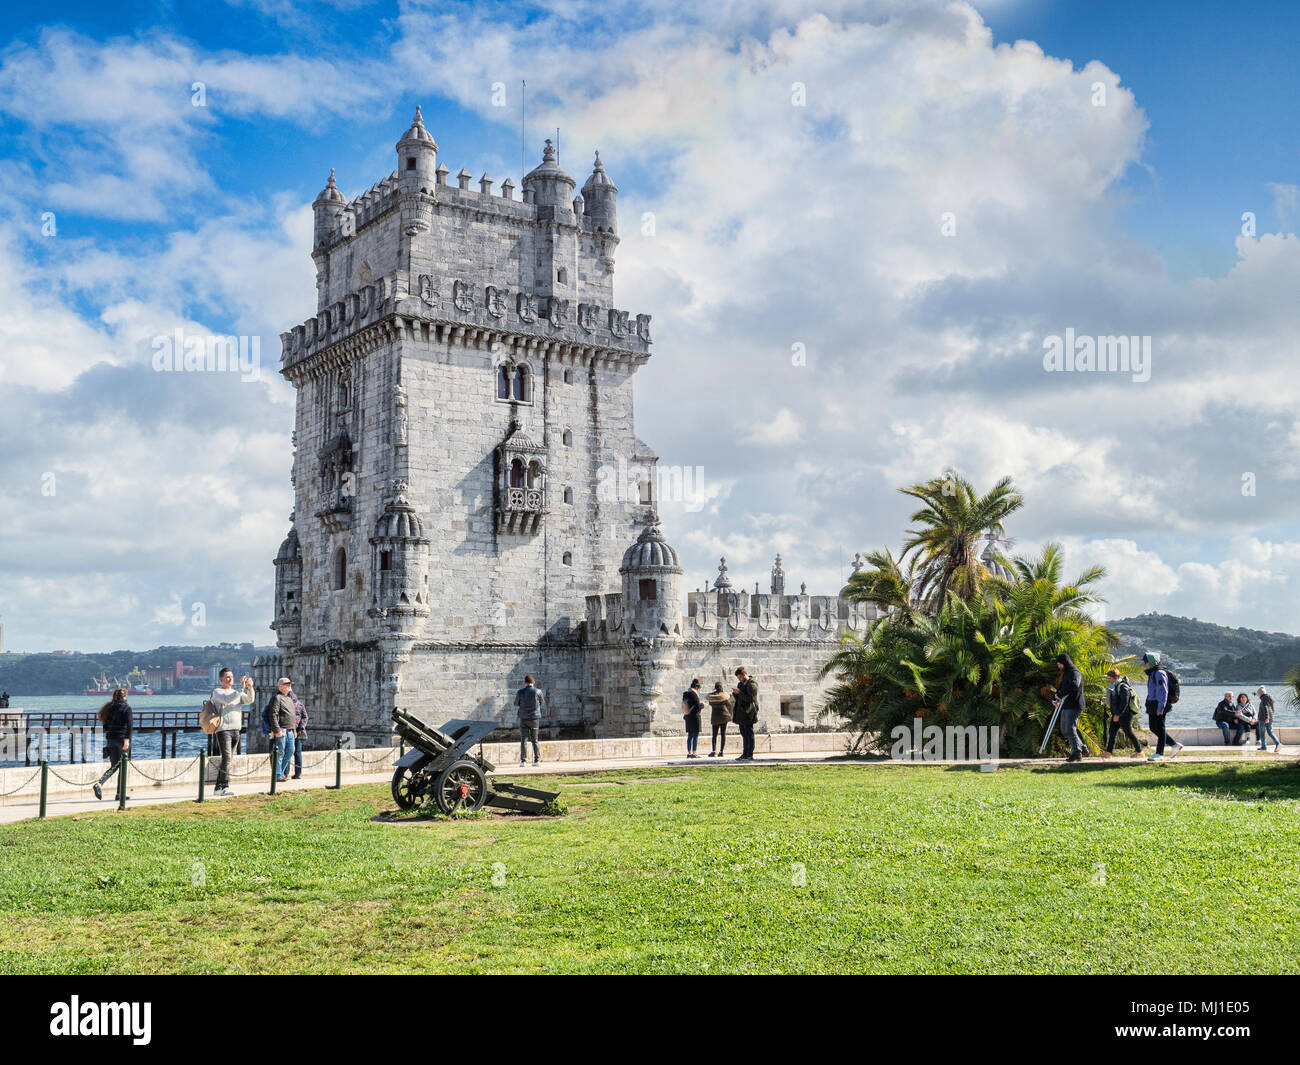 5 de marzo de 2018: Lisboa Portugal -la Torre de Belem, el famoso monumento y Sitio de Patrimonio Mundial de la UNESCO. Foto de stock